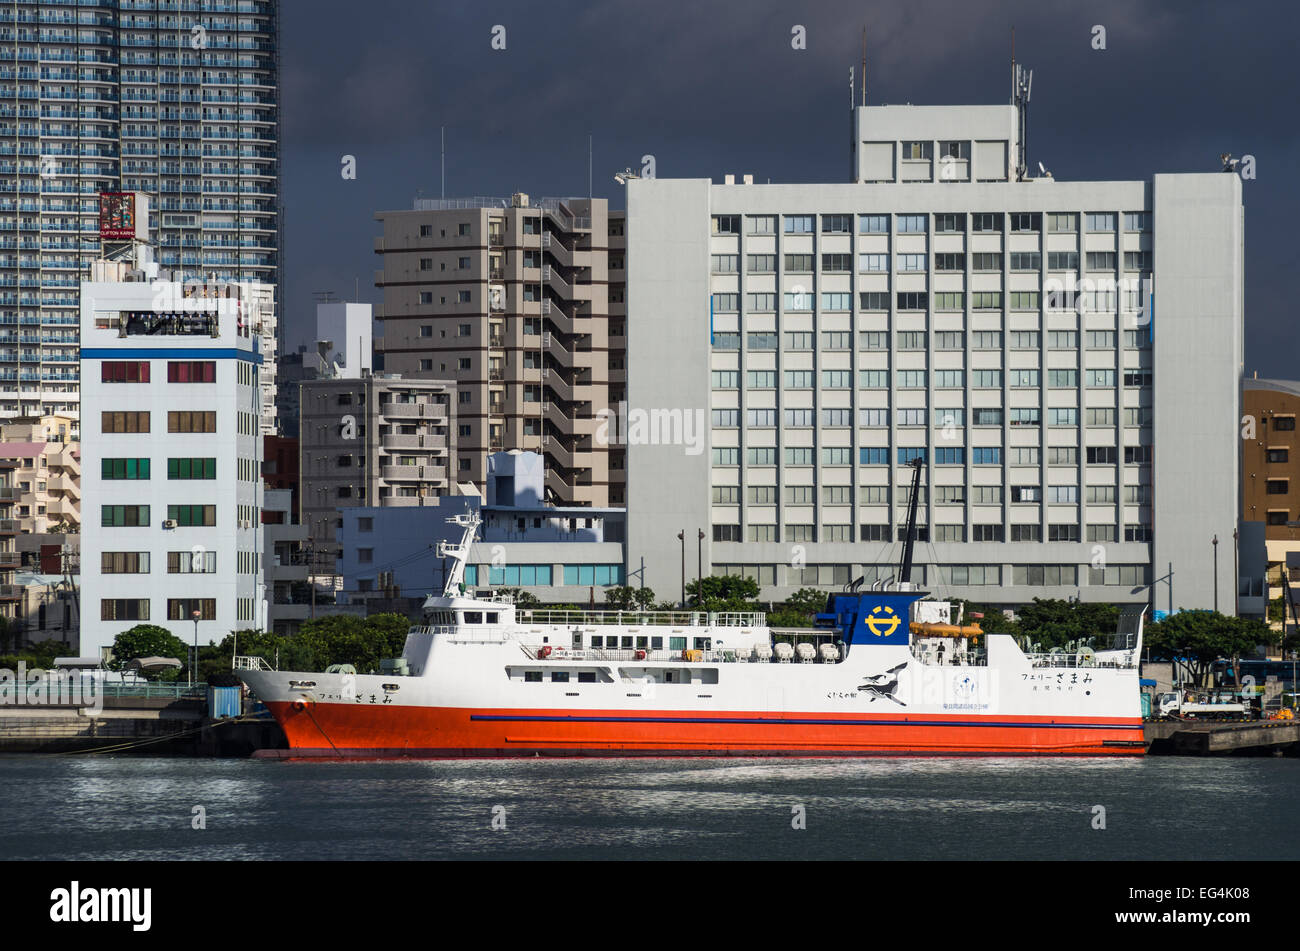 Le Ferry "Zamami" sur l'ancre dans le Port de Tomari, Naha, Okinawa, Japon Banque D'Images